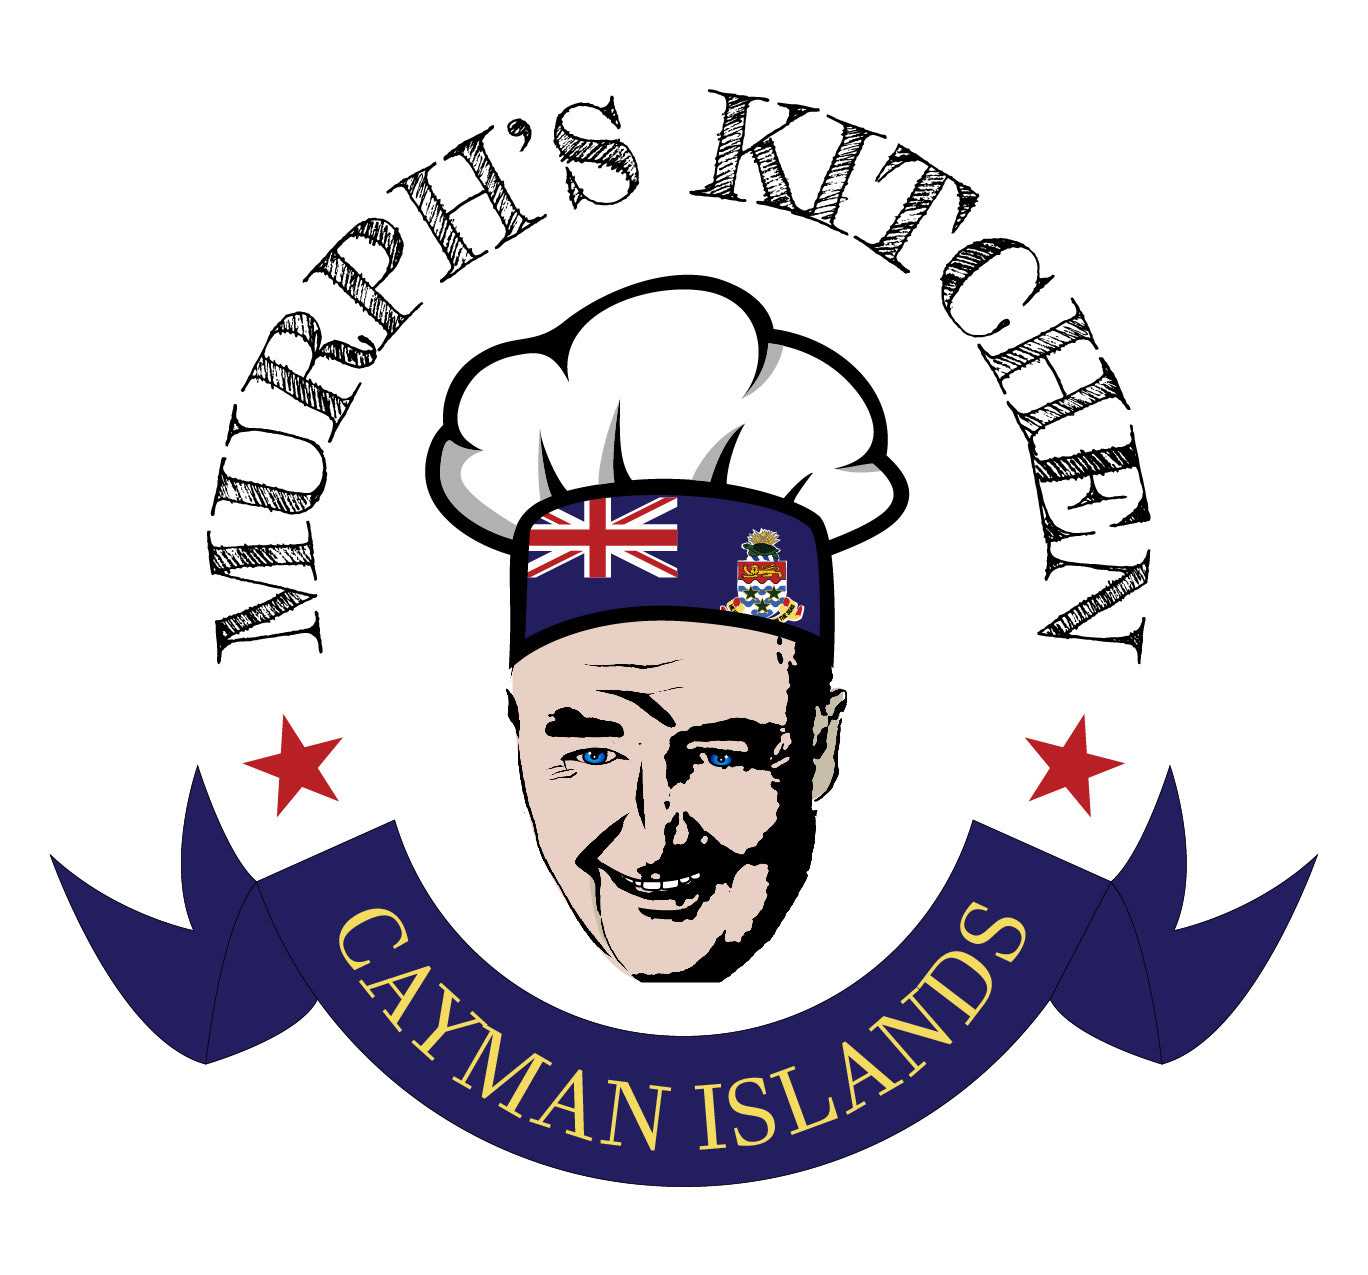 Murph's Kitchen